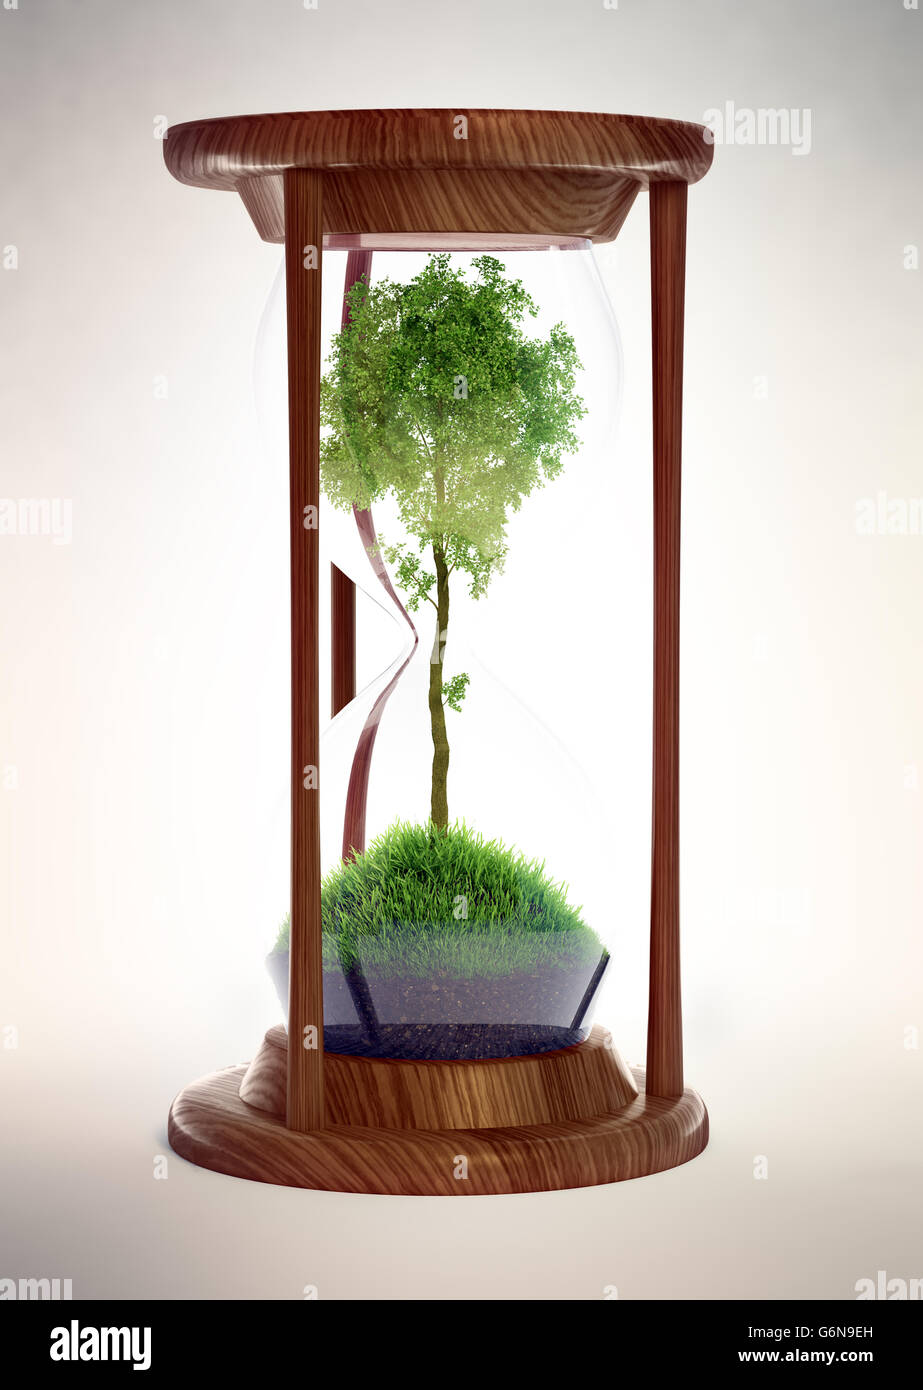 Sanduhr mit einem Baum im Inneren - Ökologie-Konzept 3D illustration Stockfoto